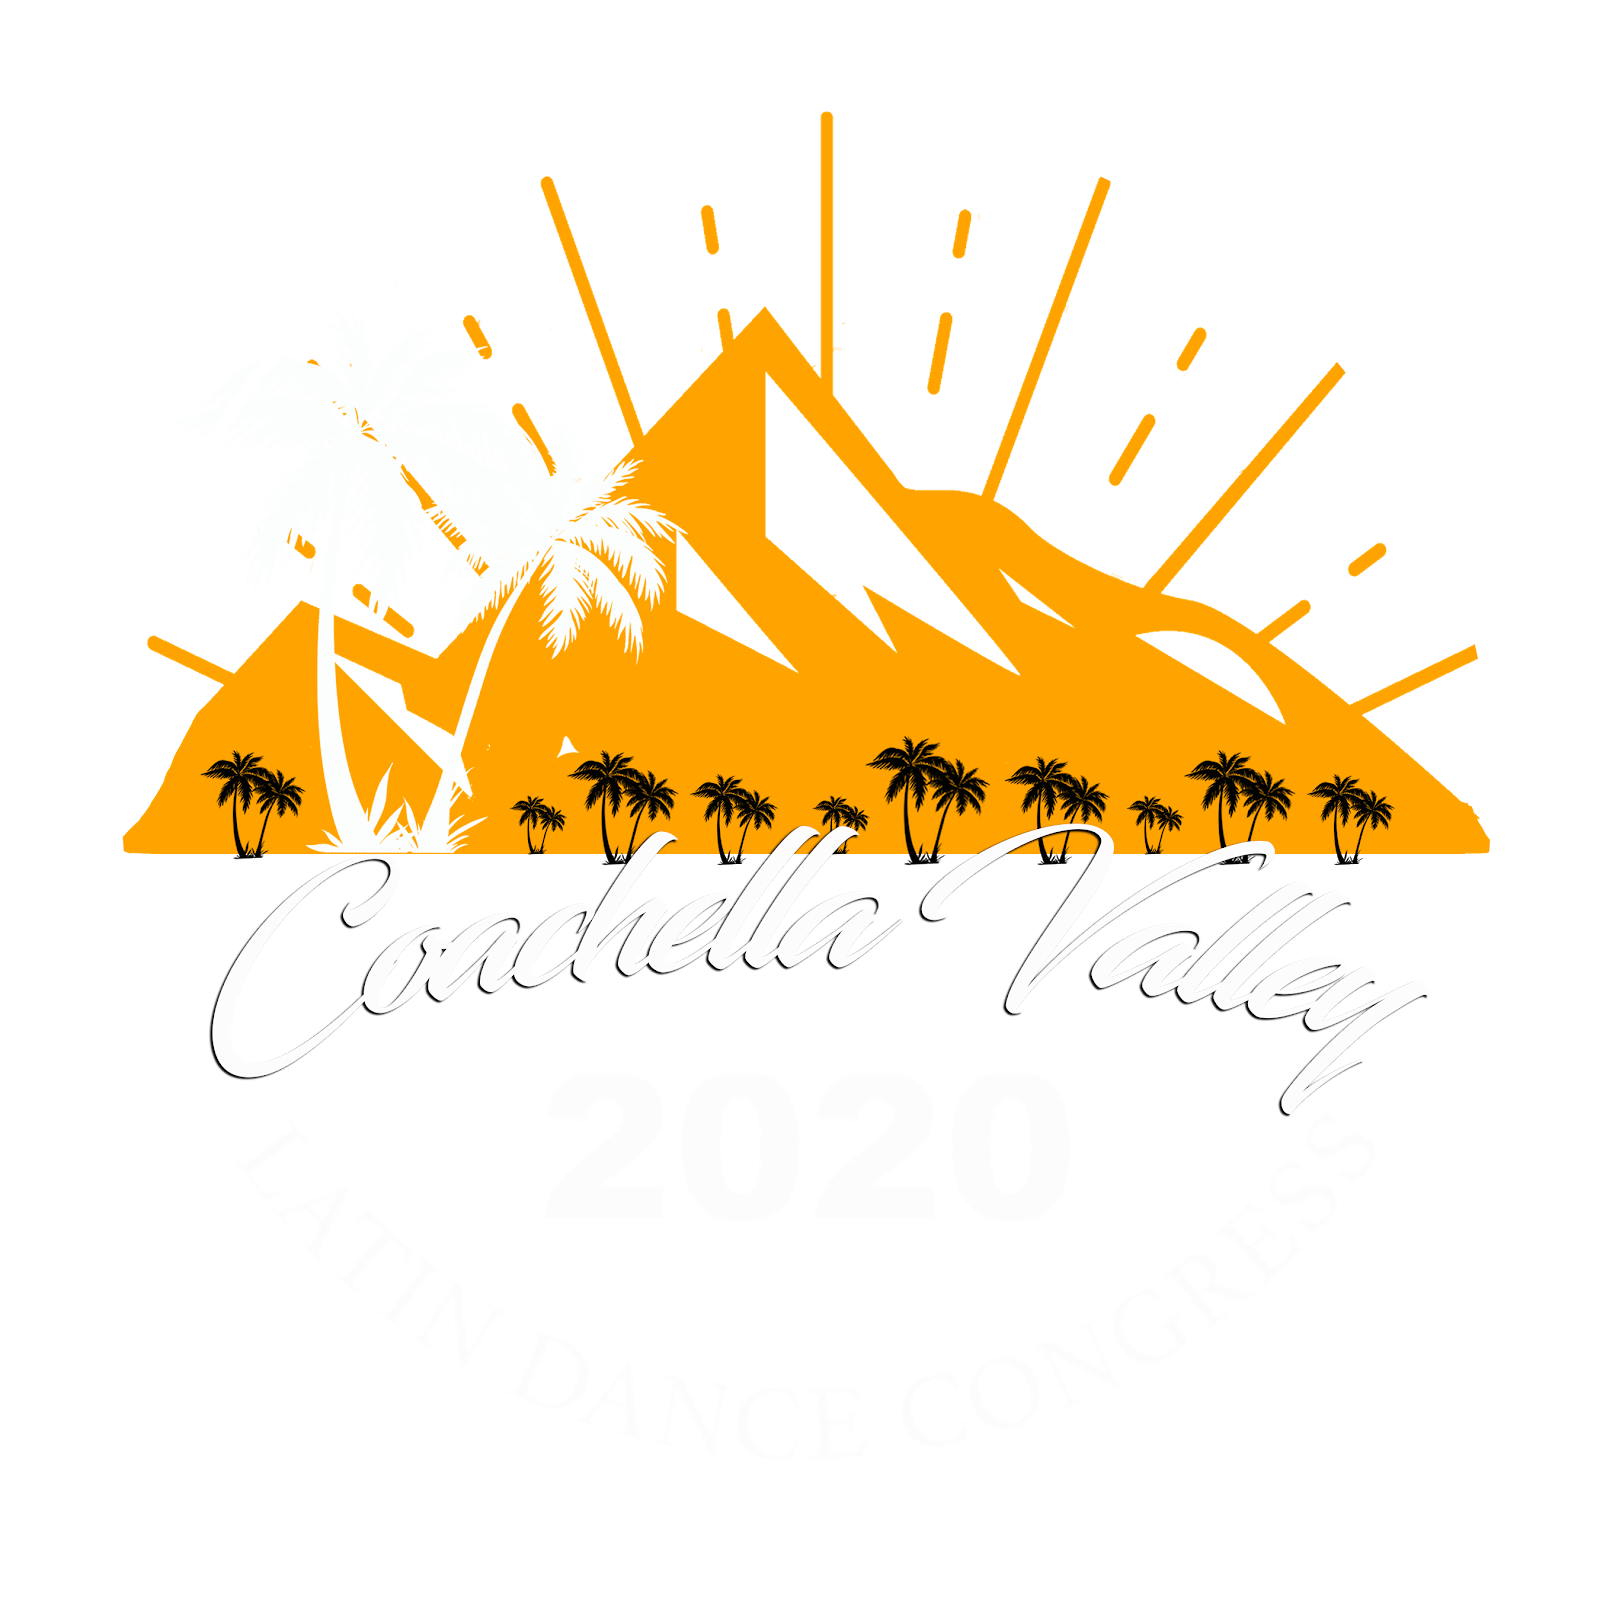 Coachella Valley Latin Dance Congress